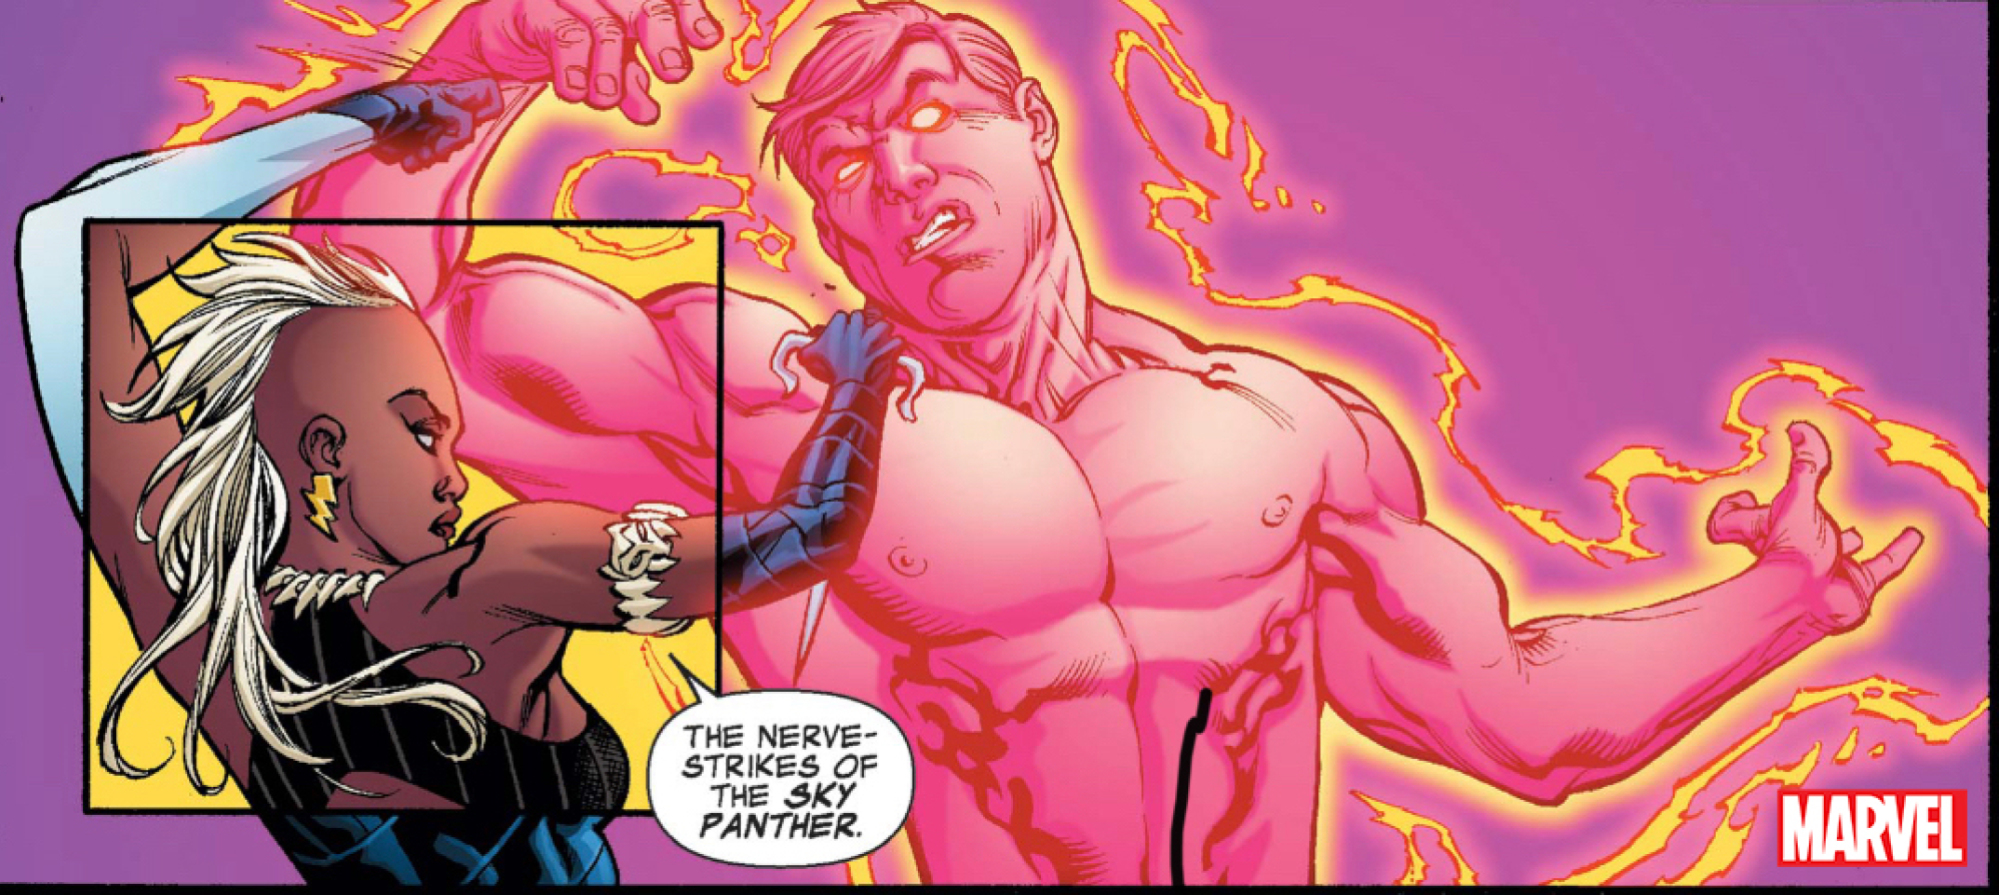 Un panneau de bande dessinée Marvel montrant Sky Panther.